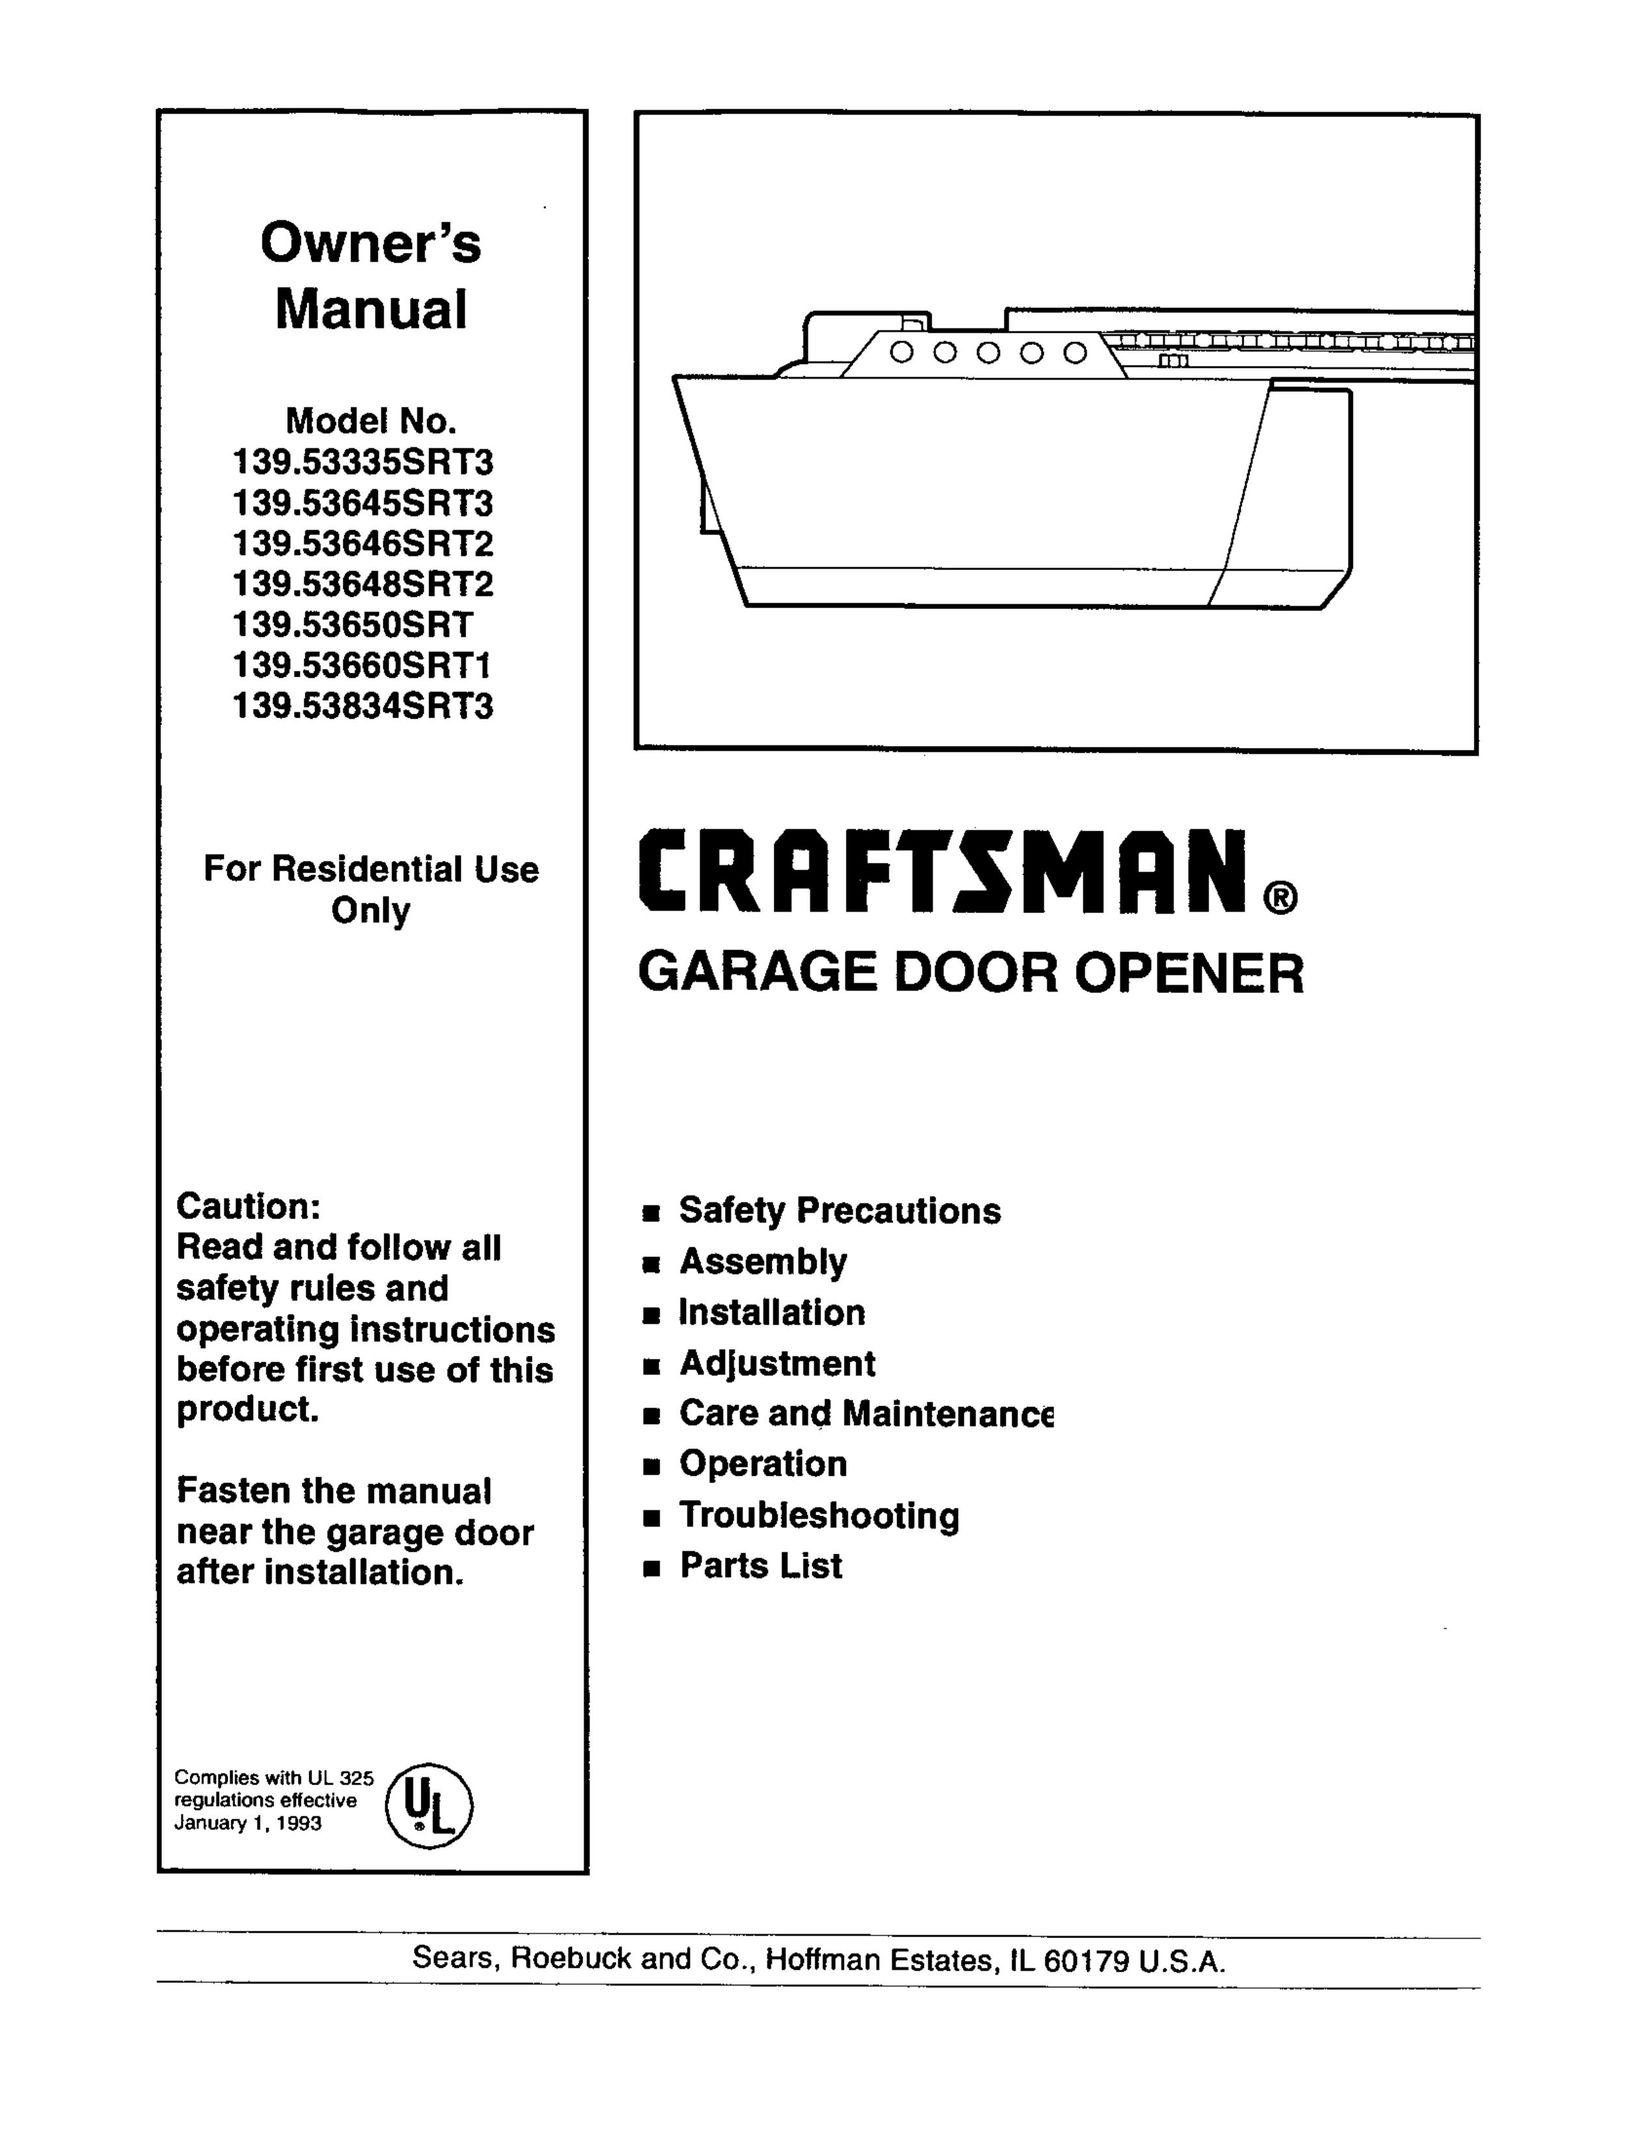 Craftsman 139.53648SRT2 Garage Door Opener User Manual